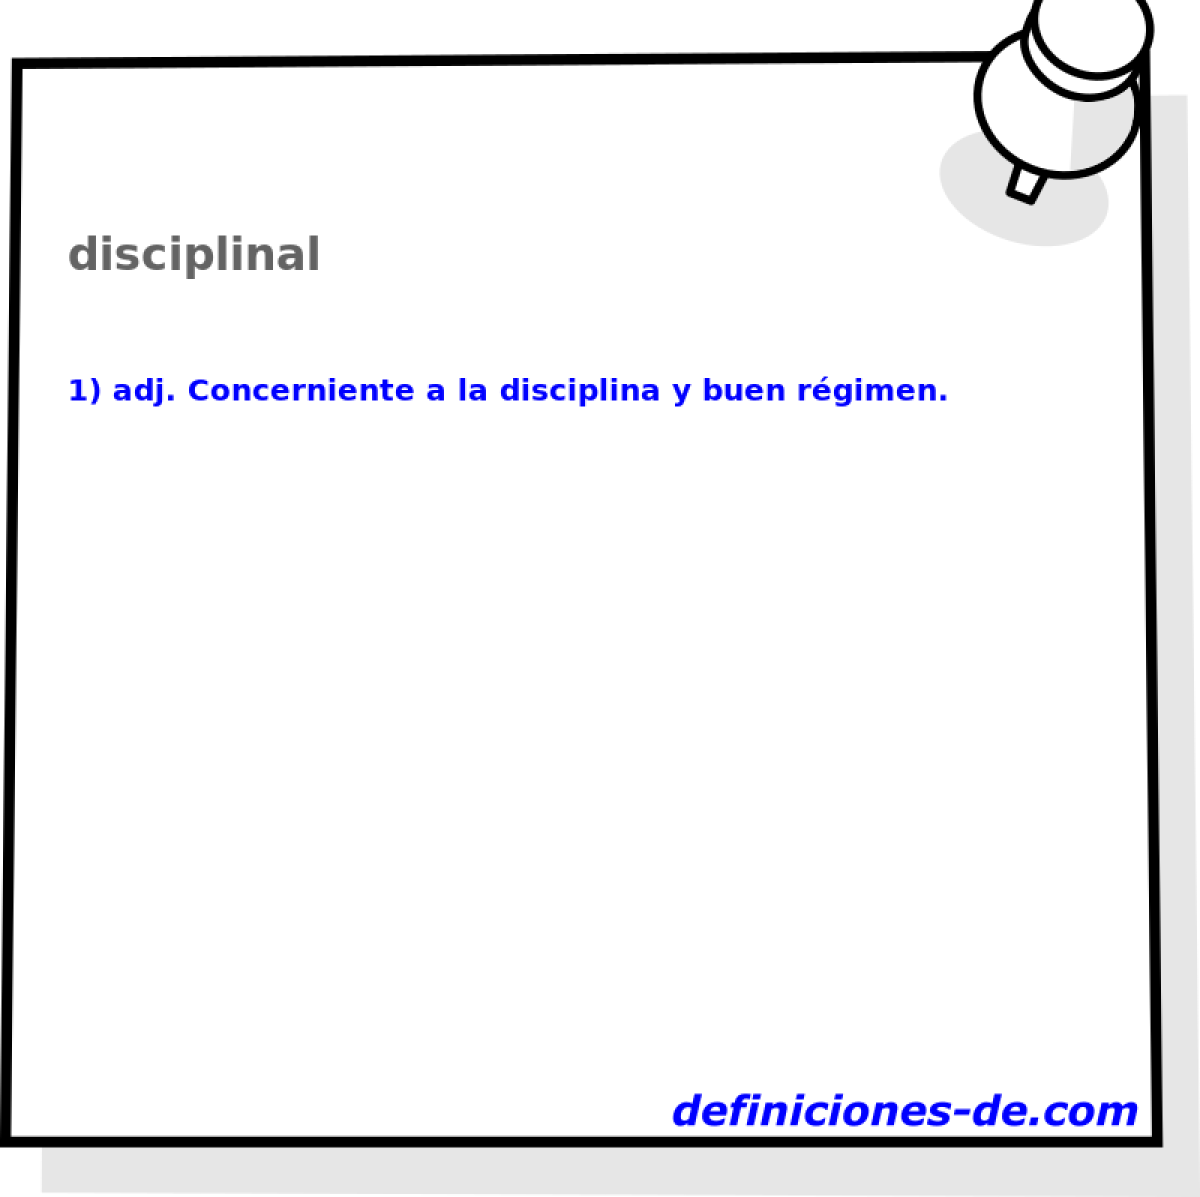 disciplinal 